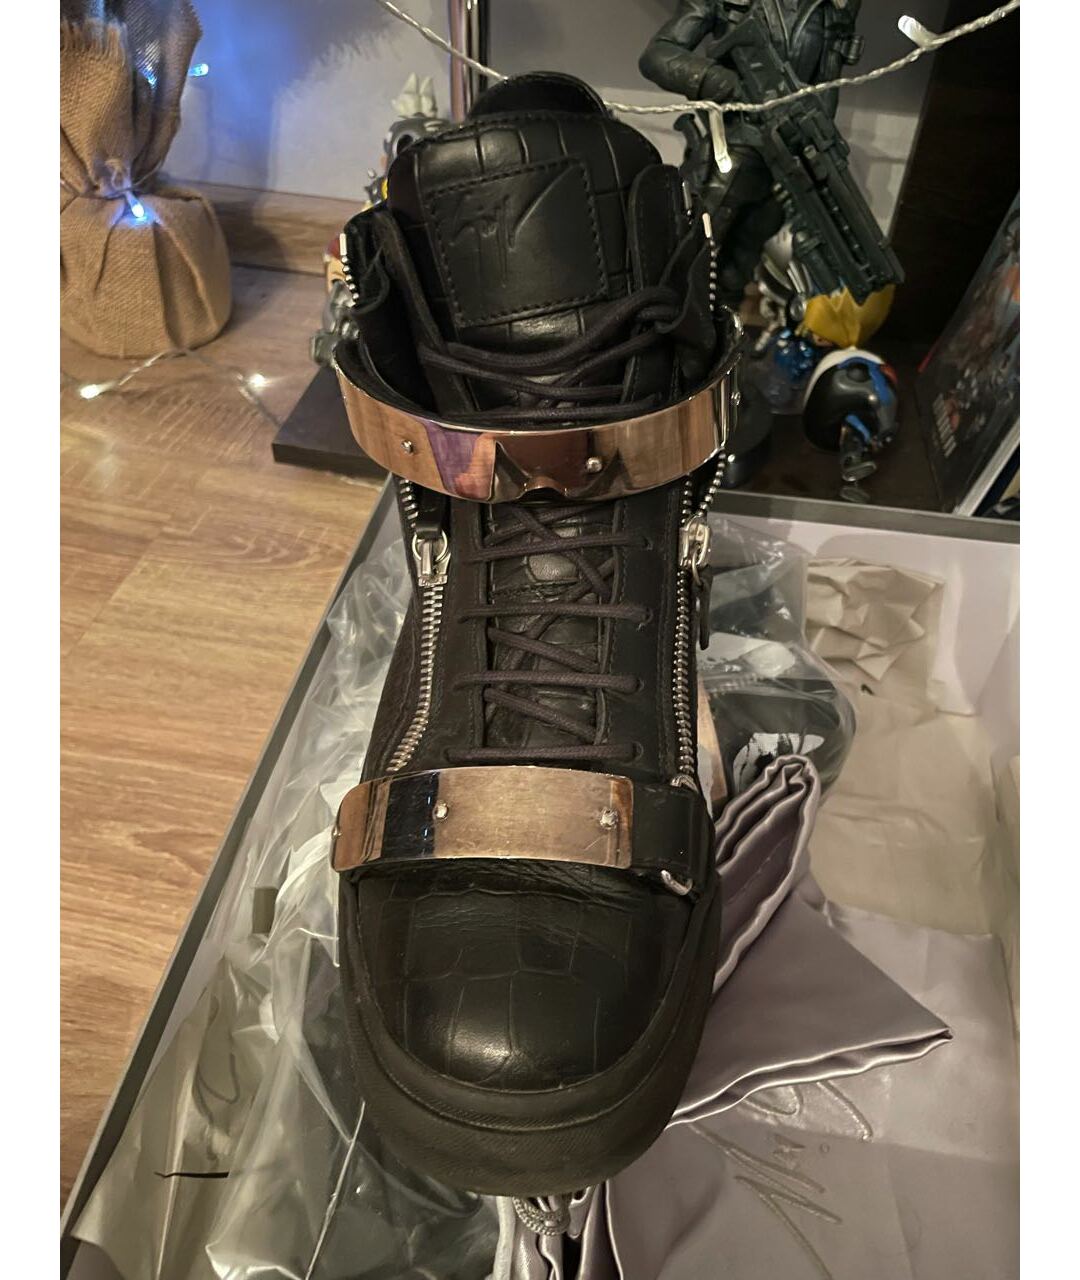 GIUSEPPE ZANOTTI DESIGN Черные кожаные высокие кроссовки / кеды, фото 2